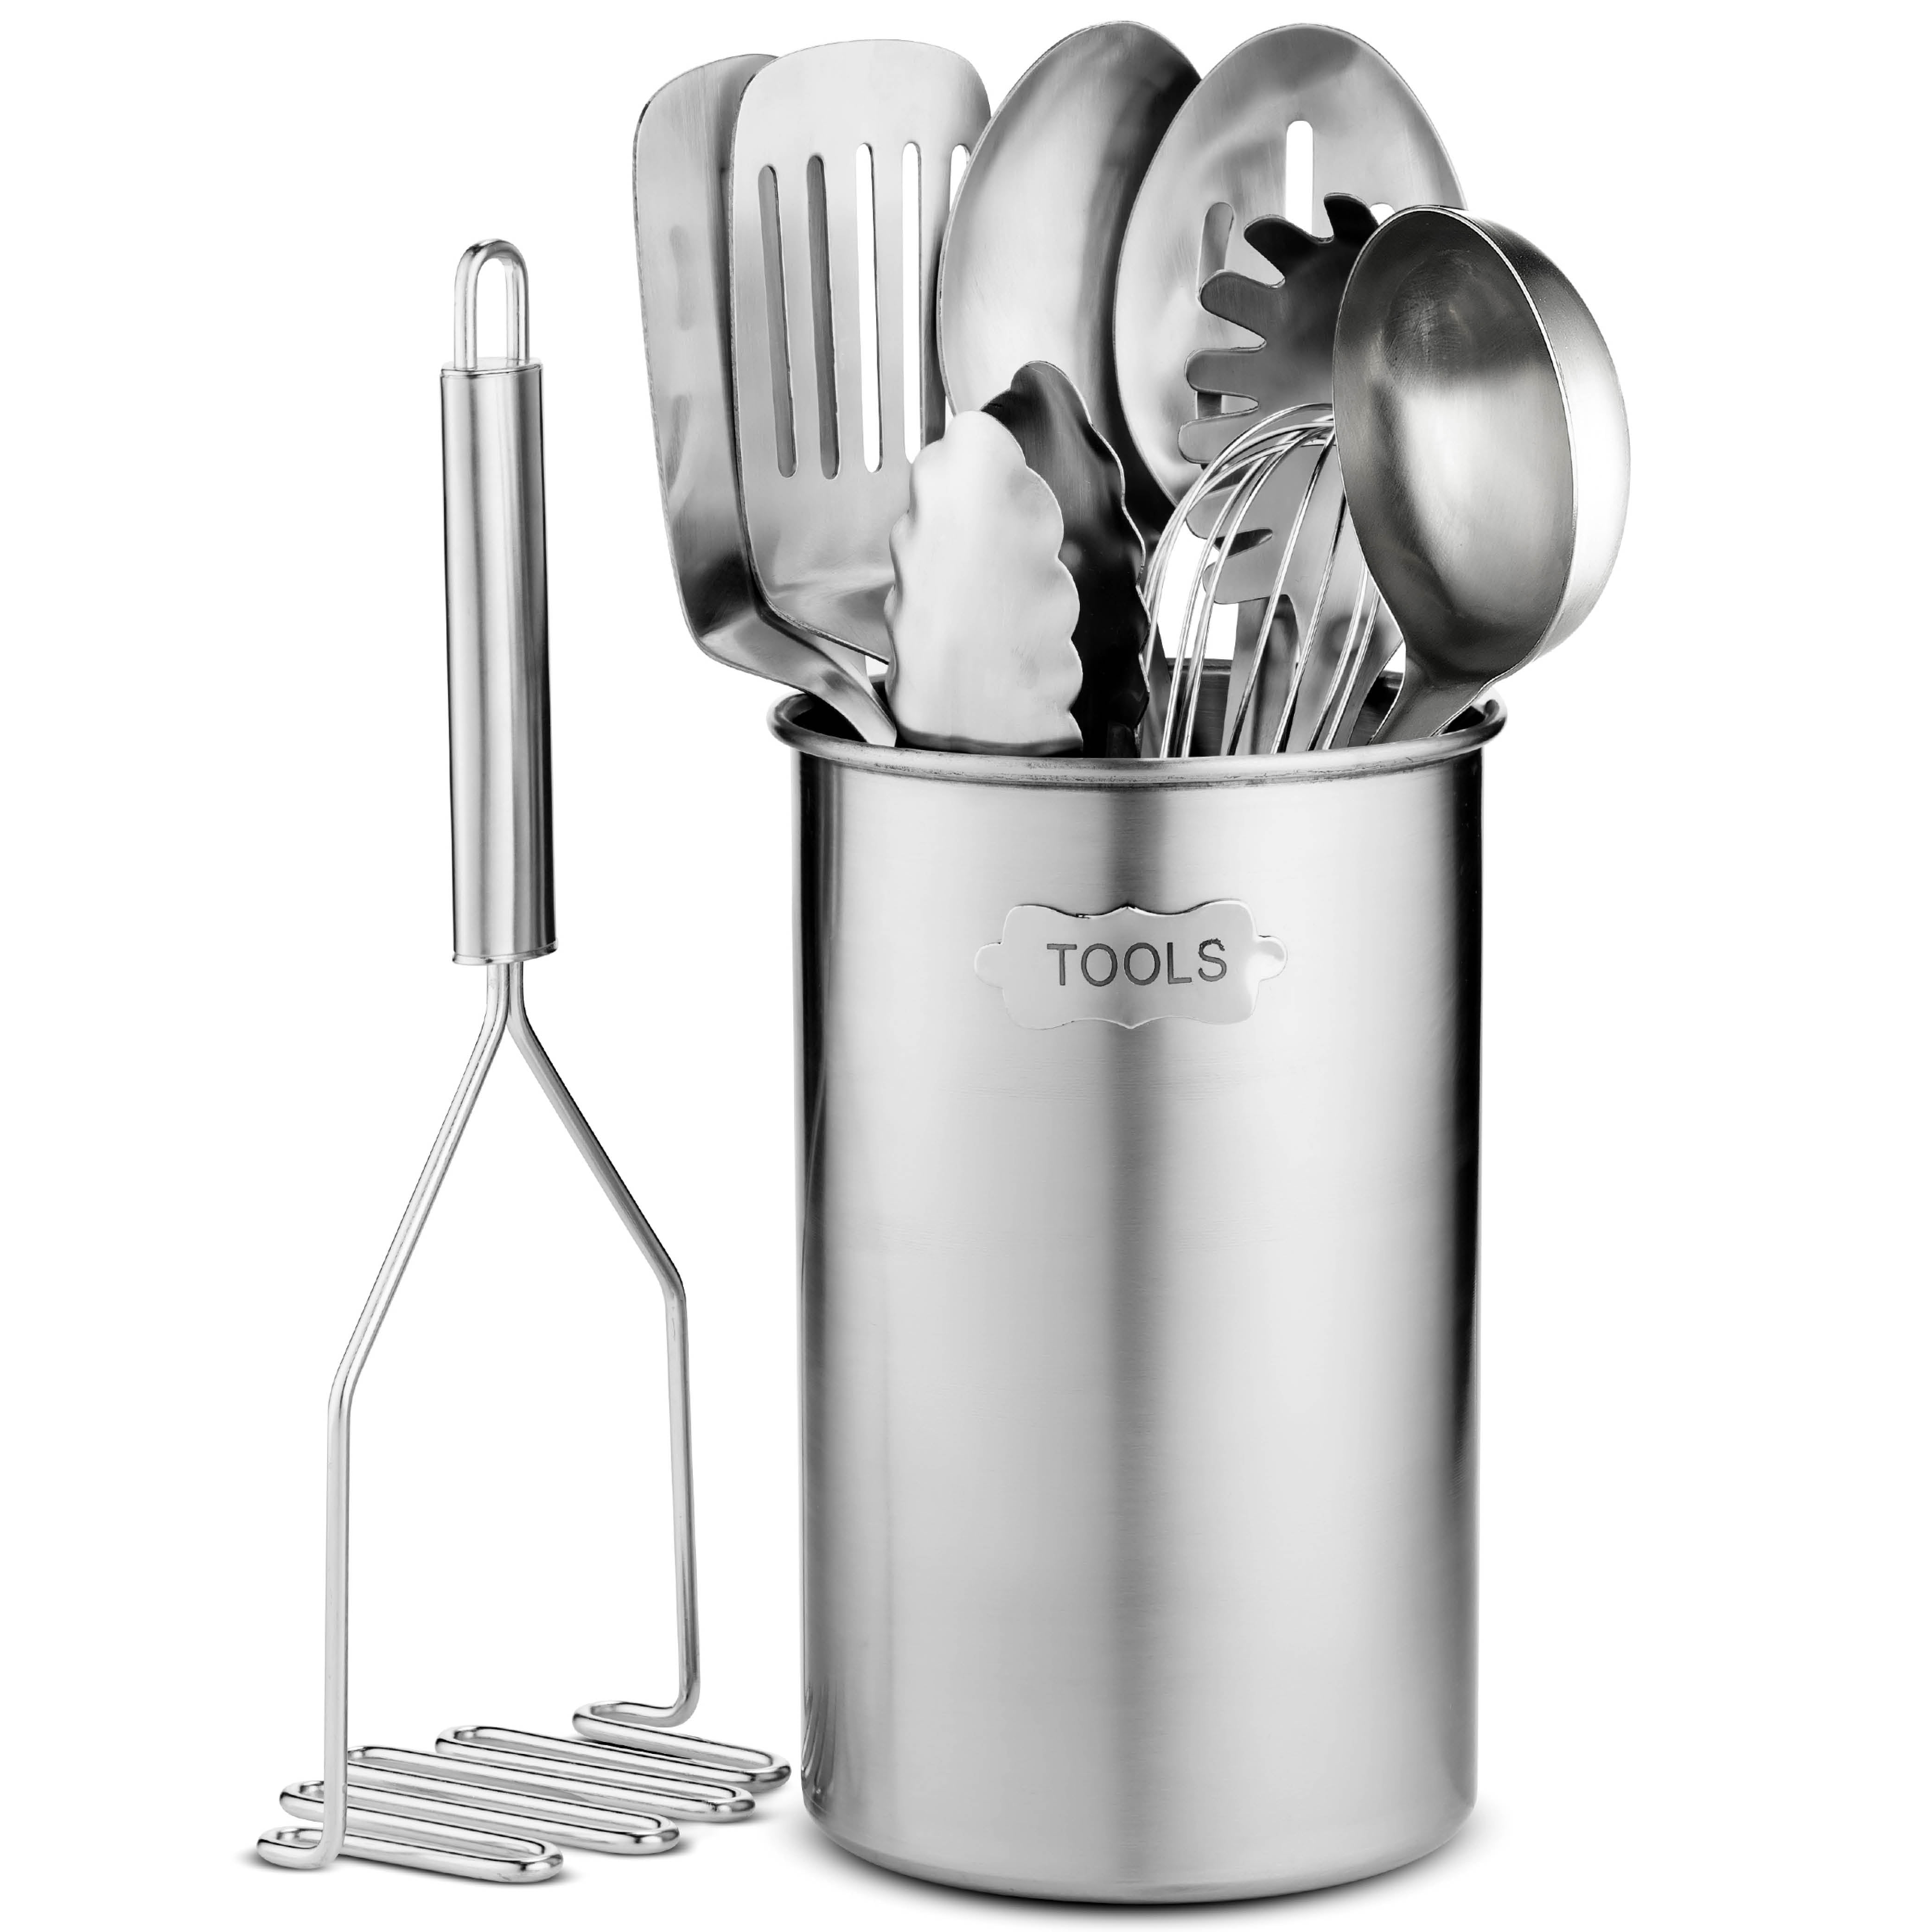 Stainless-Steel Kitchen Utensil Set - 10-piece premium Nonstick